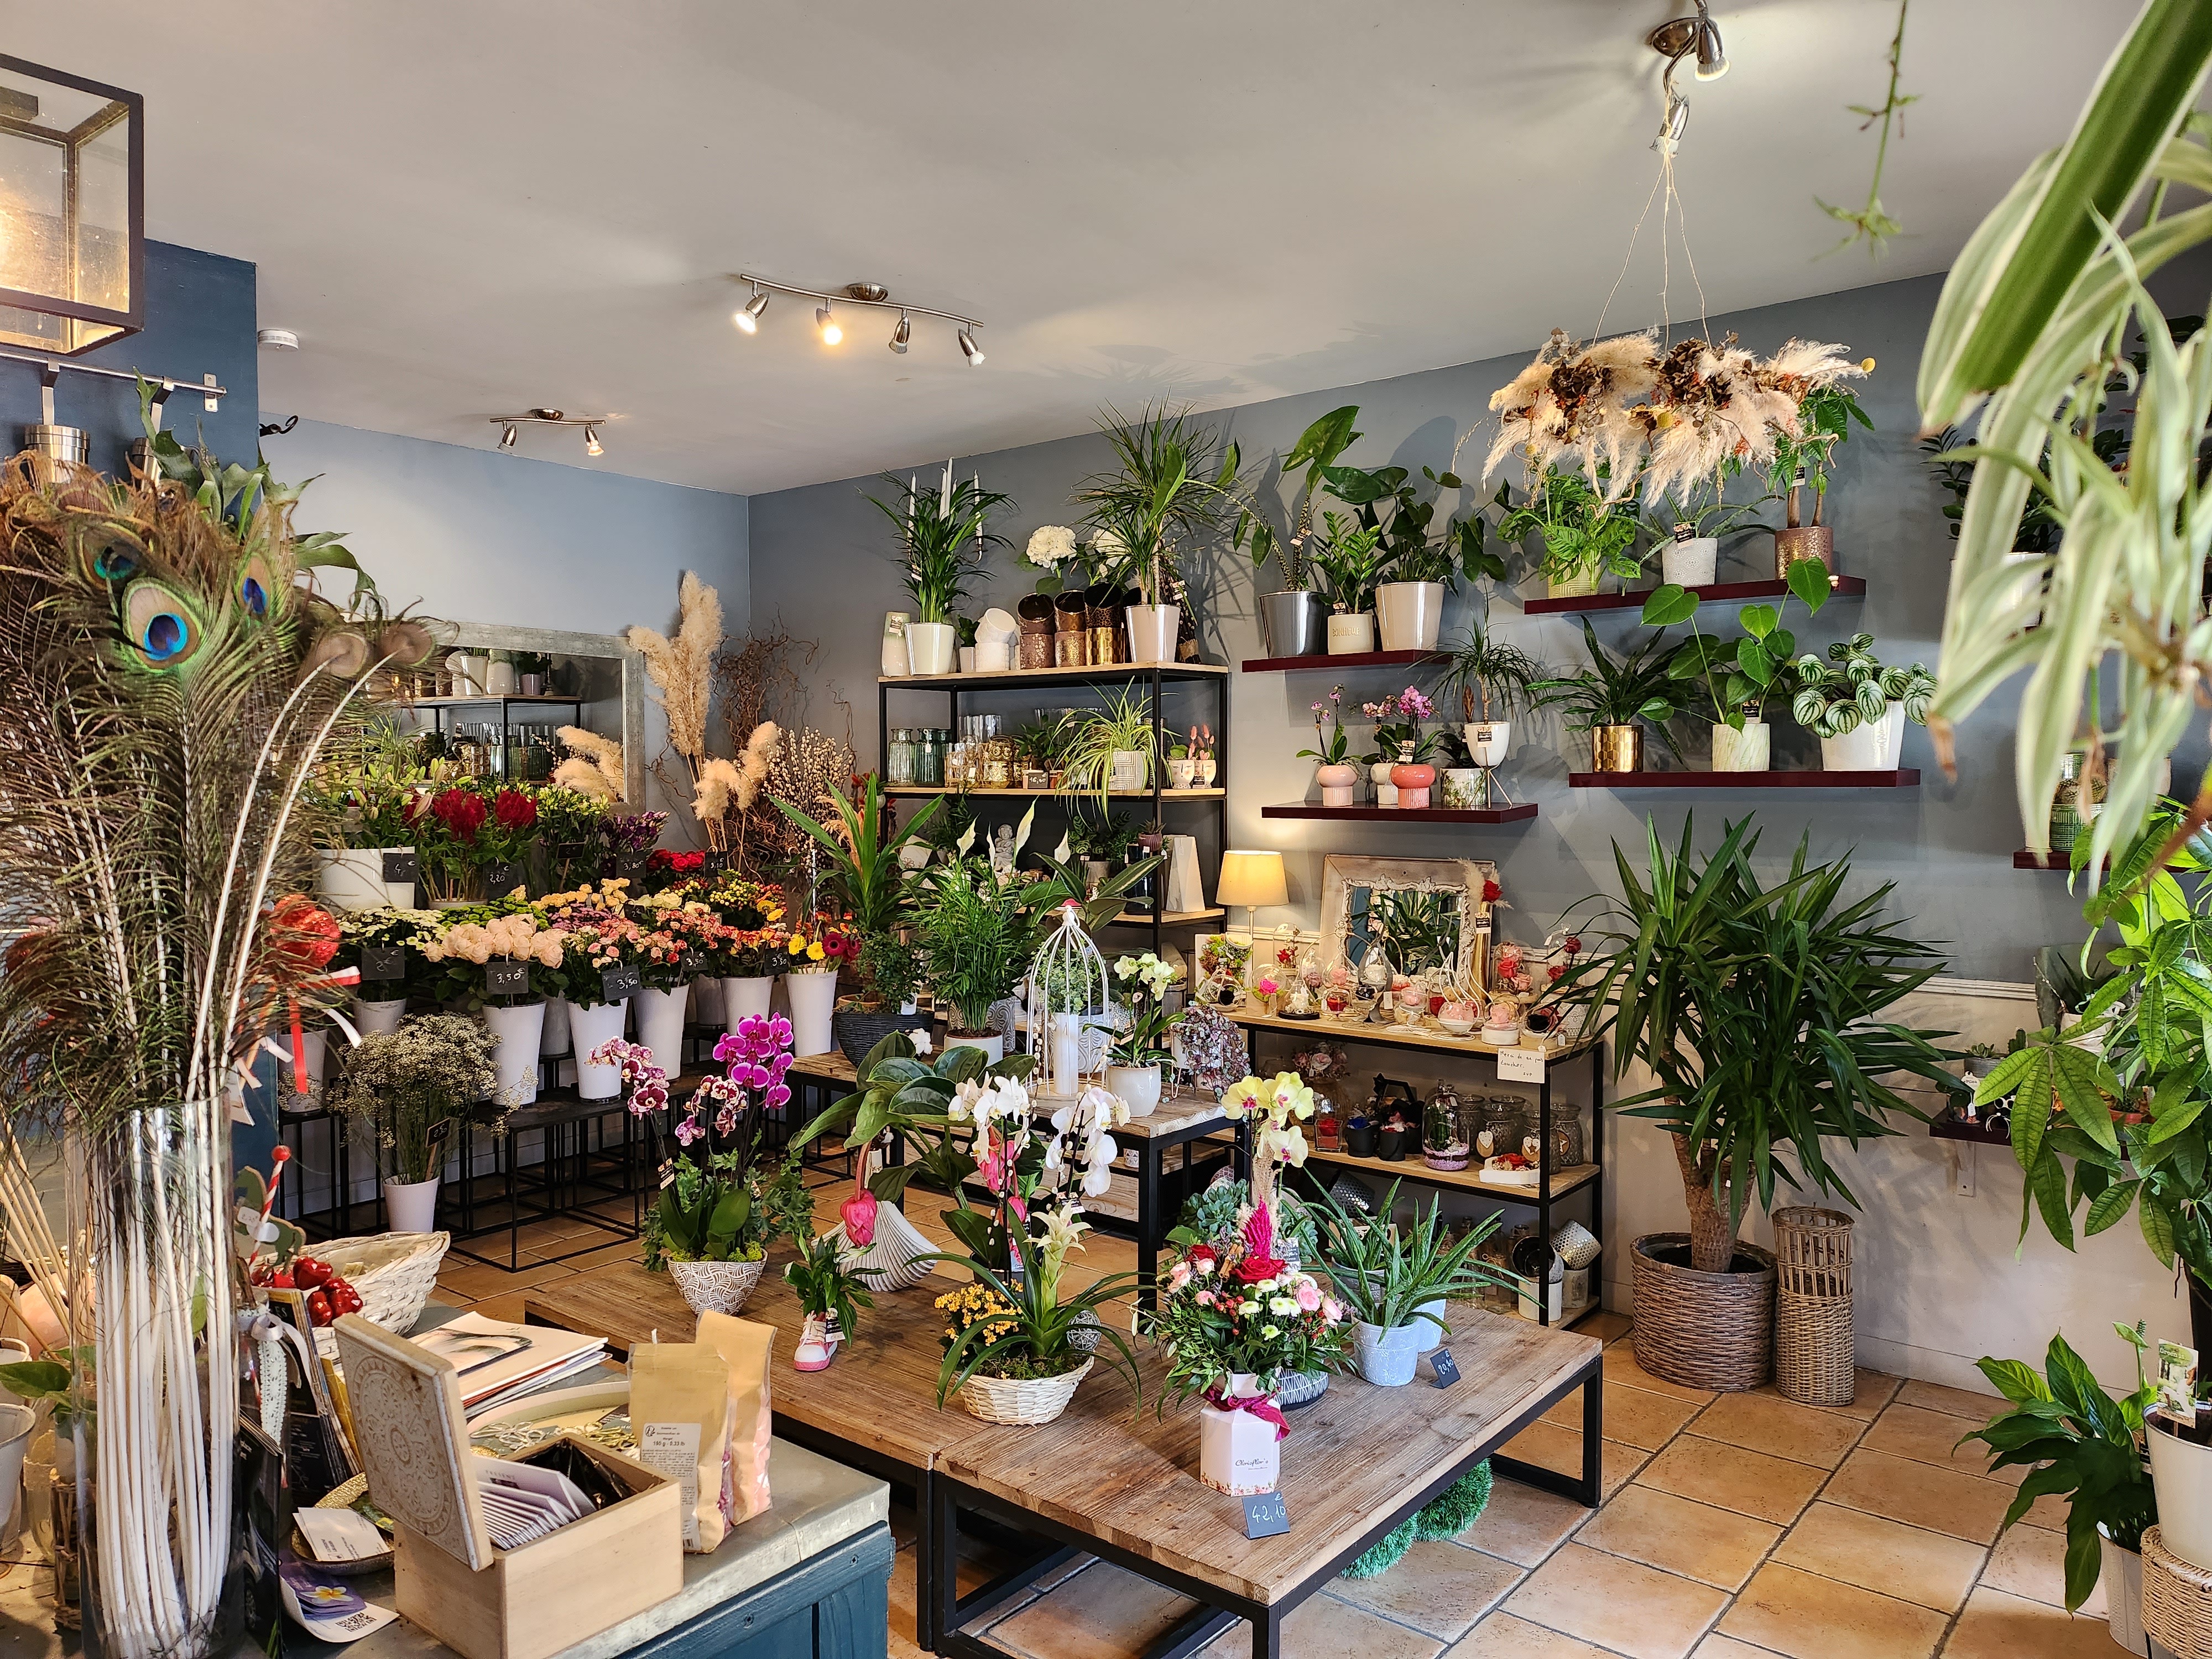 Belle boutique de fleurs dans village touristique de Dordogne, avec divers commerces, école, collège, maison de retraite… 36 m2 en intérieur et possibilité de mettre des plantes dehors. Le magasin est climatisé. Pas de salarié.